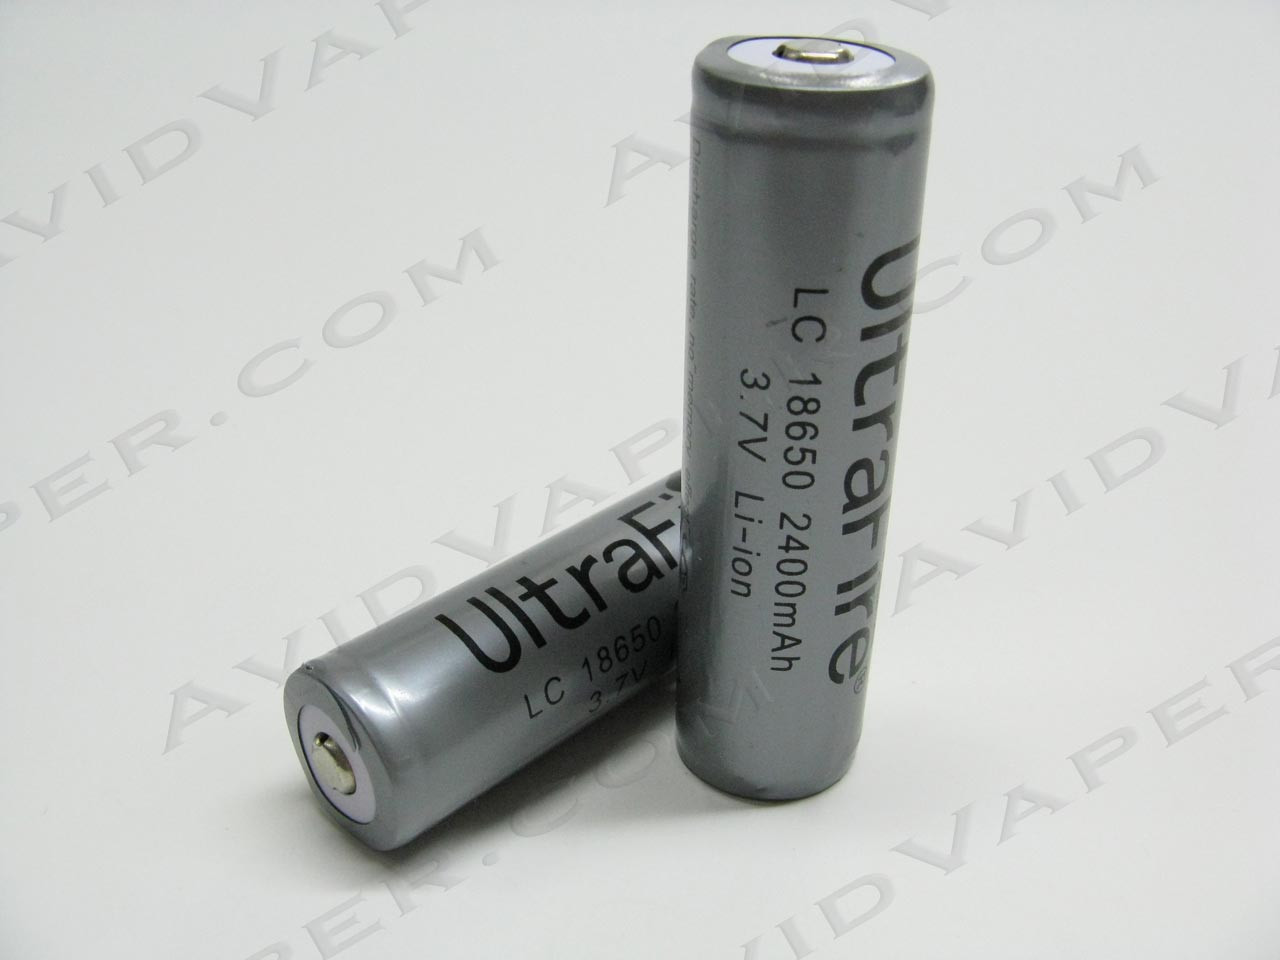 UltraFire LC18650 3.7v Protected Li-Ion Battery - Avid Vaper